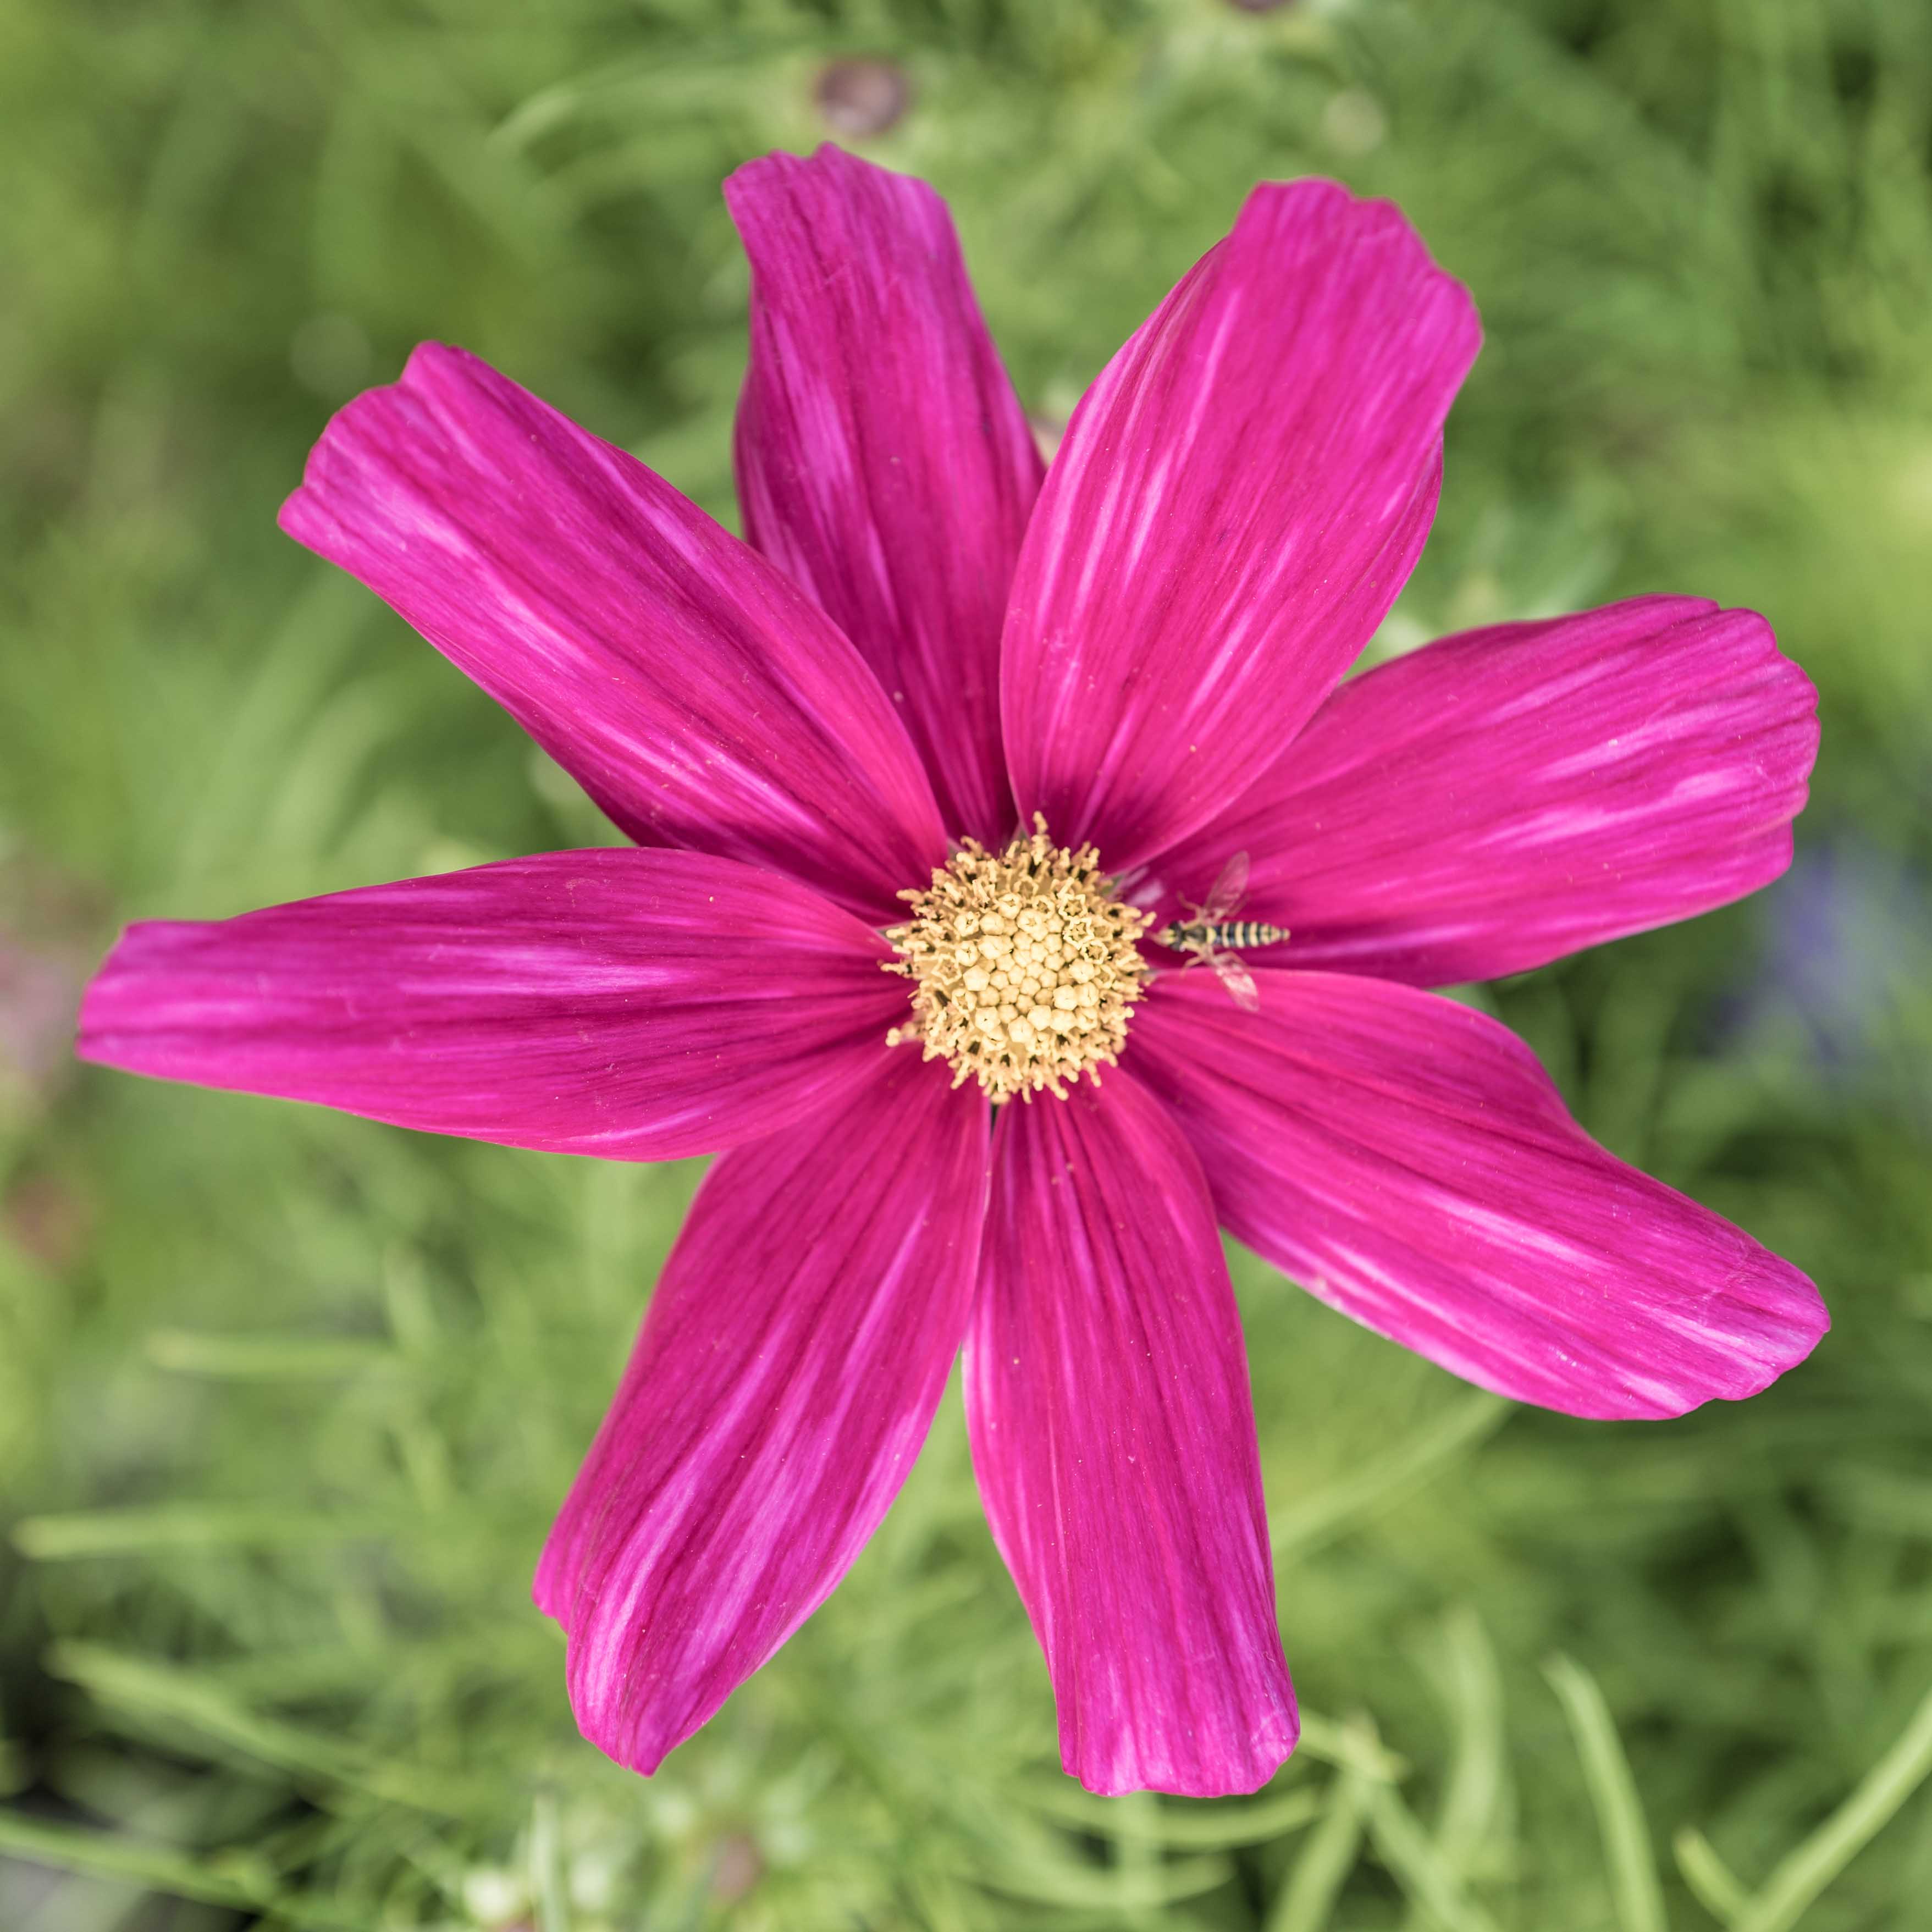 Das Bild zeigt eine Kosmee-Blume in voller Blüte. Die Blume hat strahlend rosa Blütenblätter, die breit und glatt sind und sich vom Zentrum aus nach außen erstrecken. Das Zentrum der Blume bildet ein kreisförmiges Muster, wo die Bestäubung stattfindet. Eine kleine Schwebefliege ist auf einem der Blütenblätter in der Nähe des Zentrums der Blume sichtbar, wahrscheinlich um Nektar oder Pollen zu sammeln.